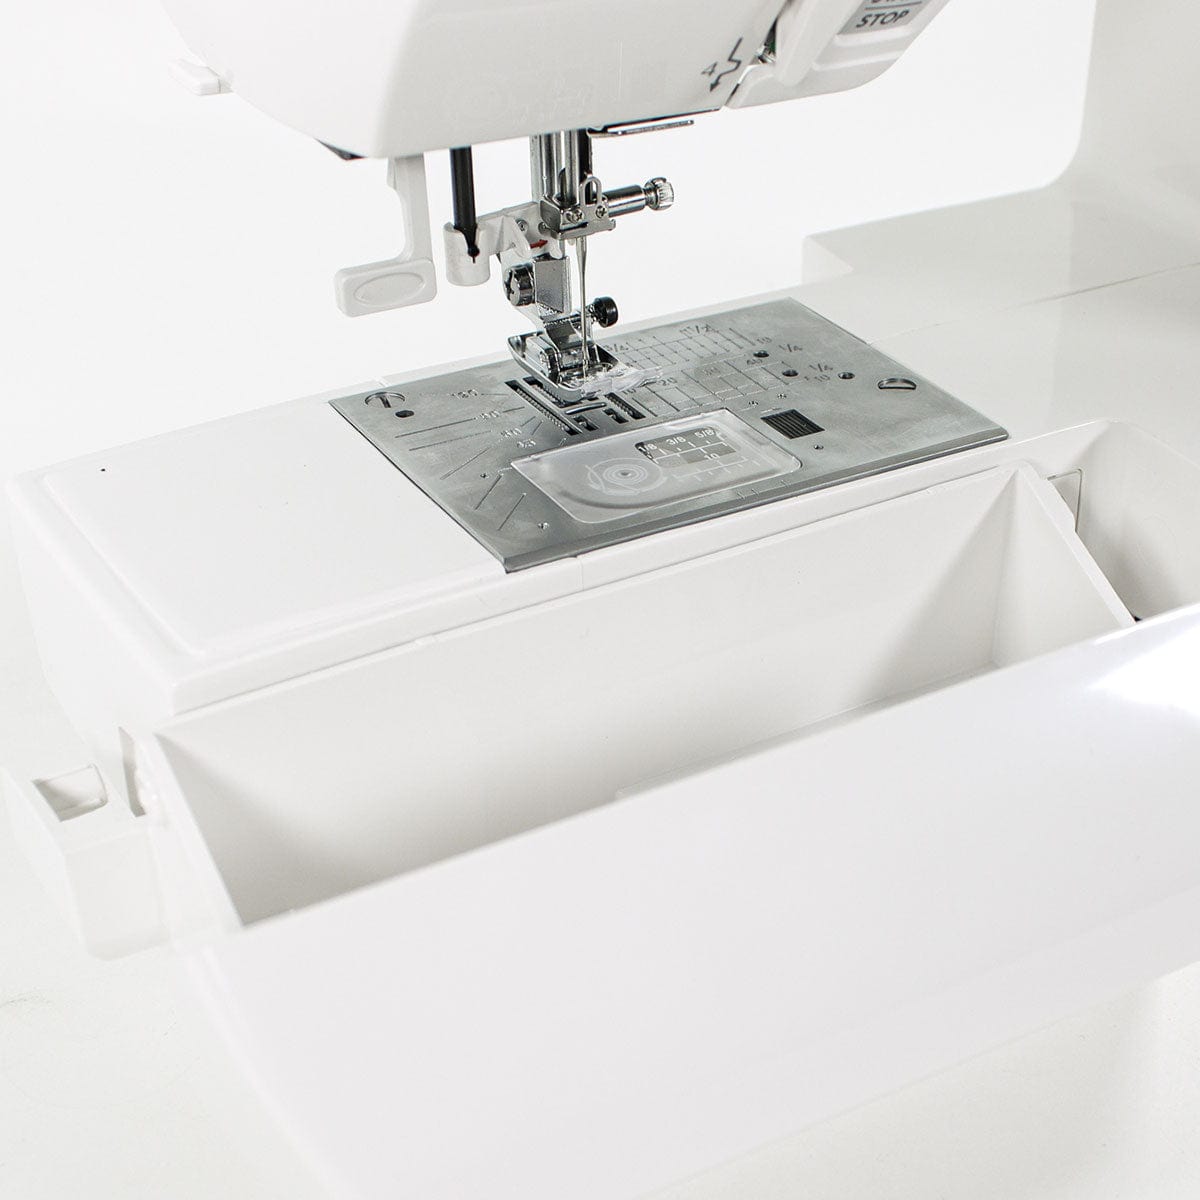 Janome 230DC Sewing Machine